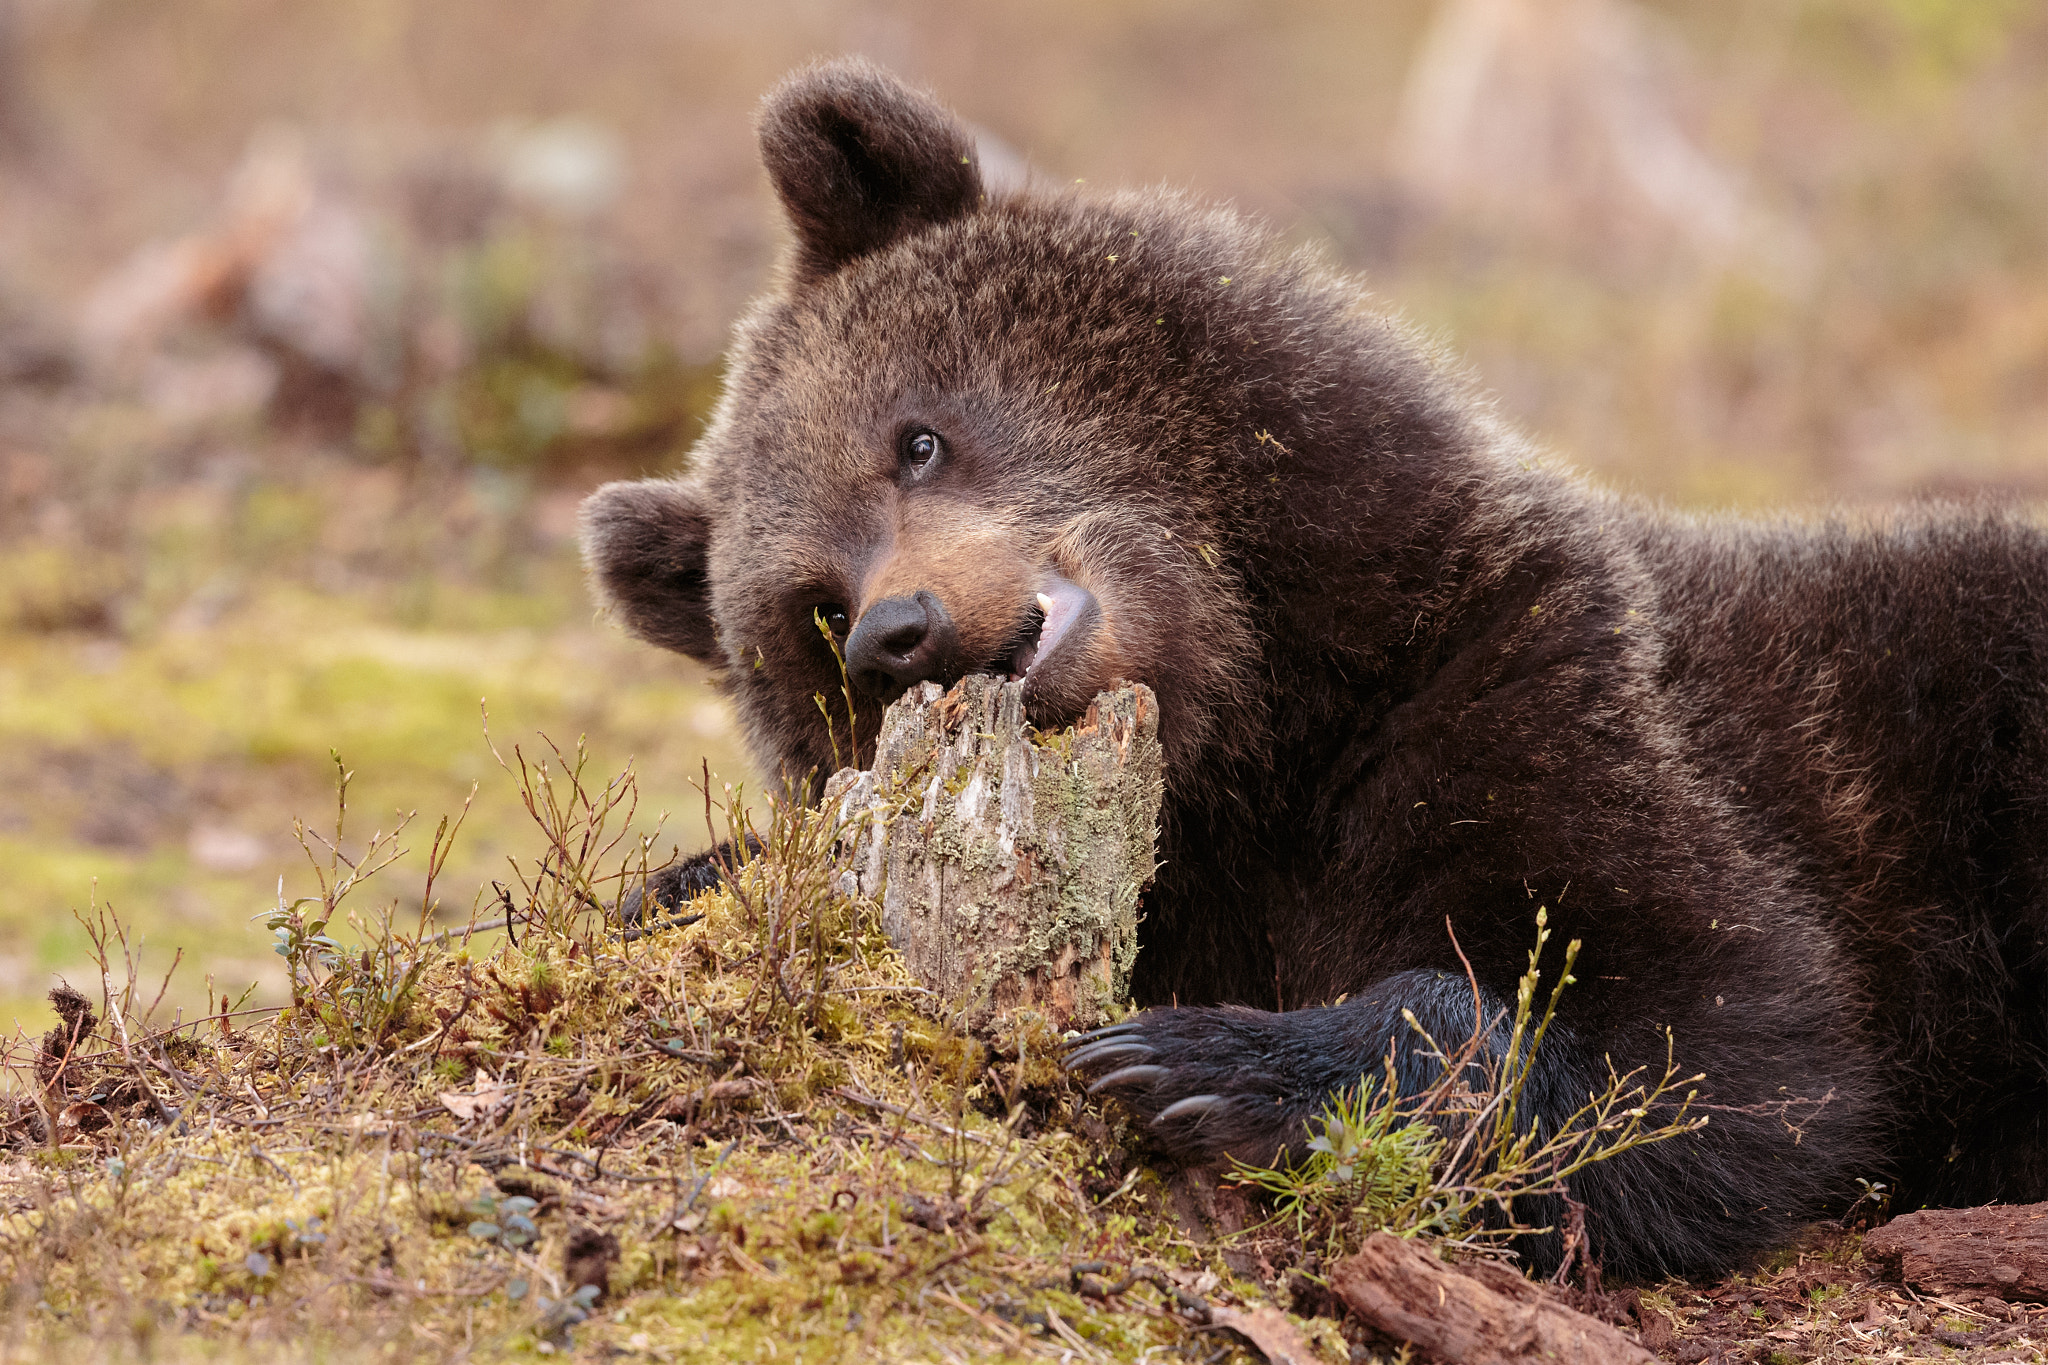 Canon EOS-1D X sample photo. Wild bear cub photography